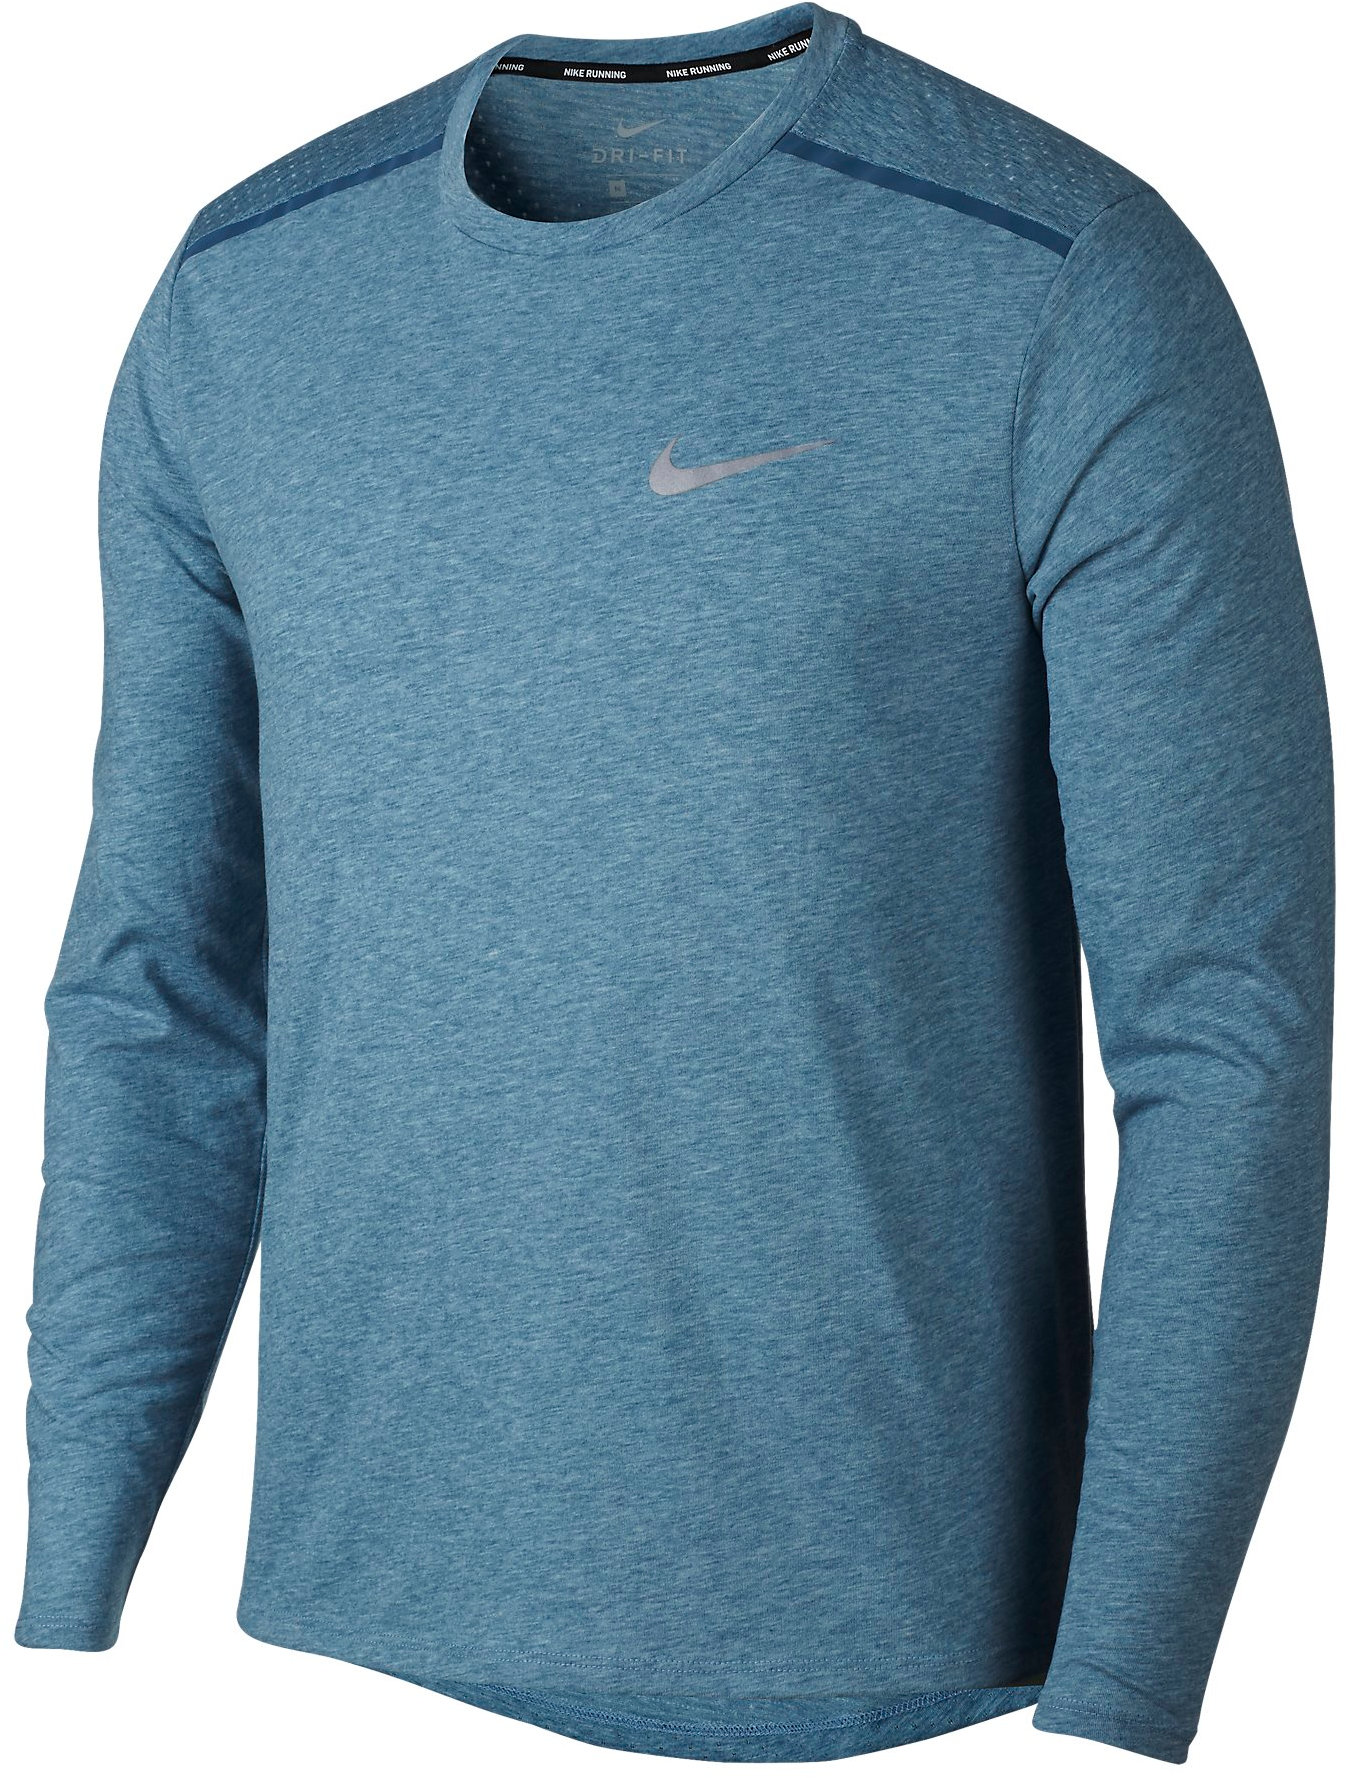 Pánské běžecké triko s dlouhým rukávem Nike TAILWIND